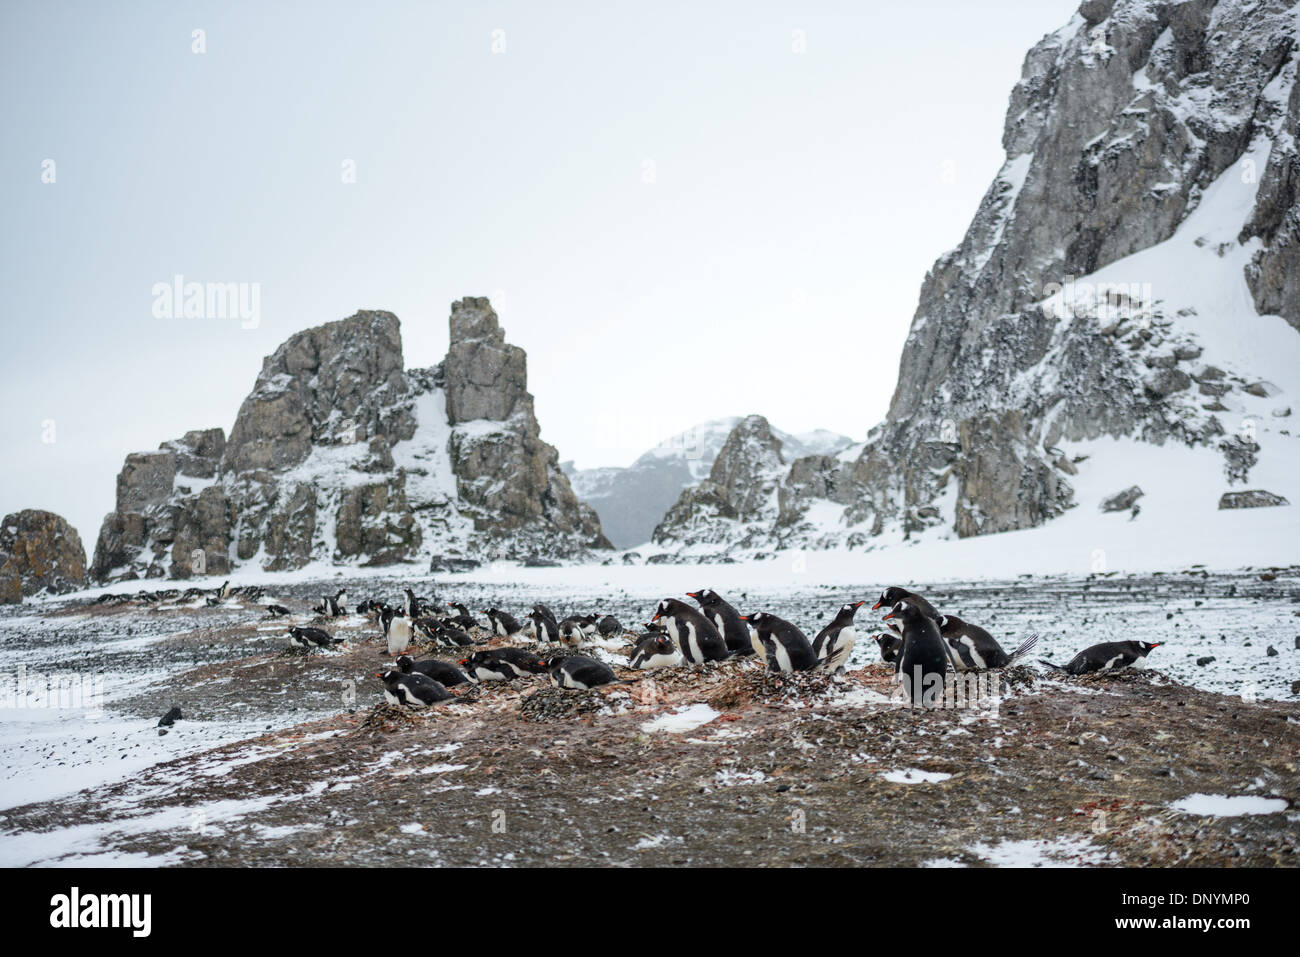 - L'ANTARCTIQUE manchots nicheurs sur une section de plage sur l'île Livingston dans les îles Shetland du Sud, l'Antarctique. Banque D'Images